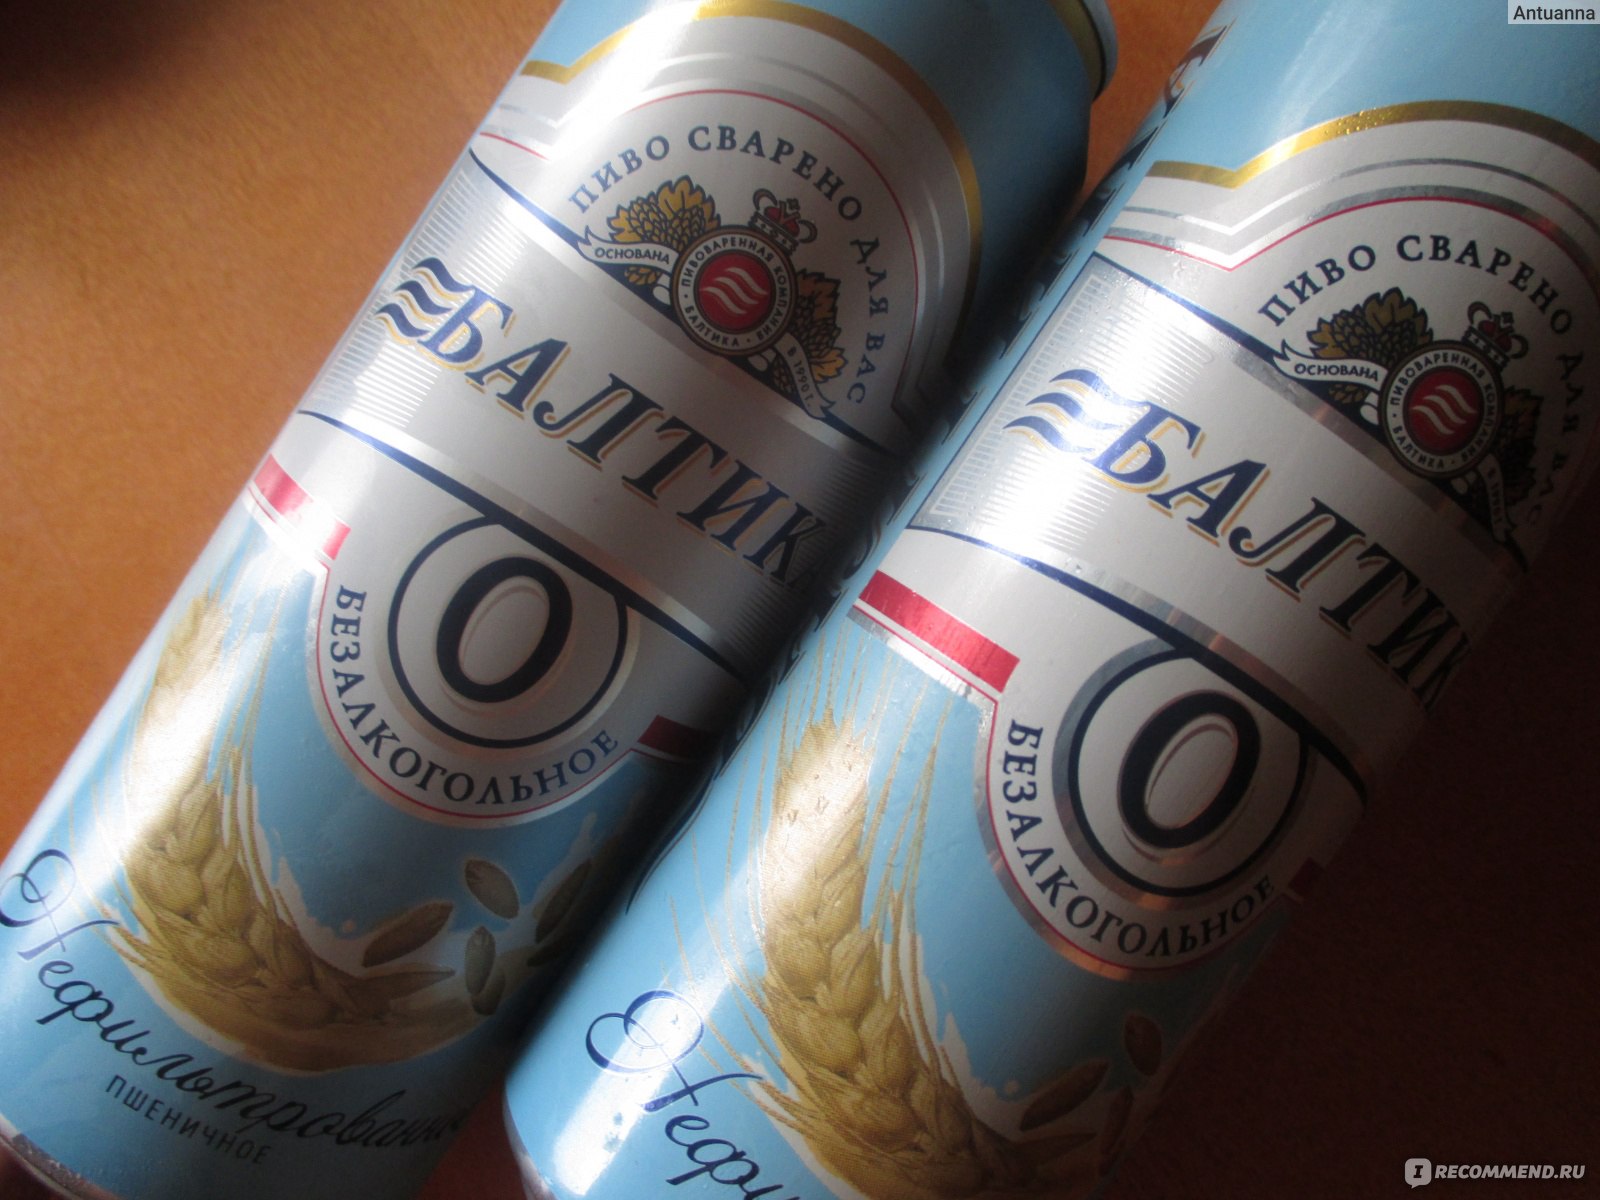 Балтика пшеничное нефильтрованное. Балтика 5 пиво. Пиво Балтика пшеничное нефильтрованное. Пиво нулевка Балтика пшеничное. Балтика нефильтрованное безалкогольное.